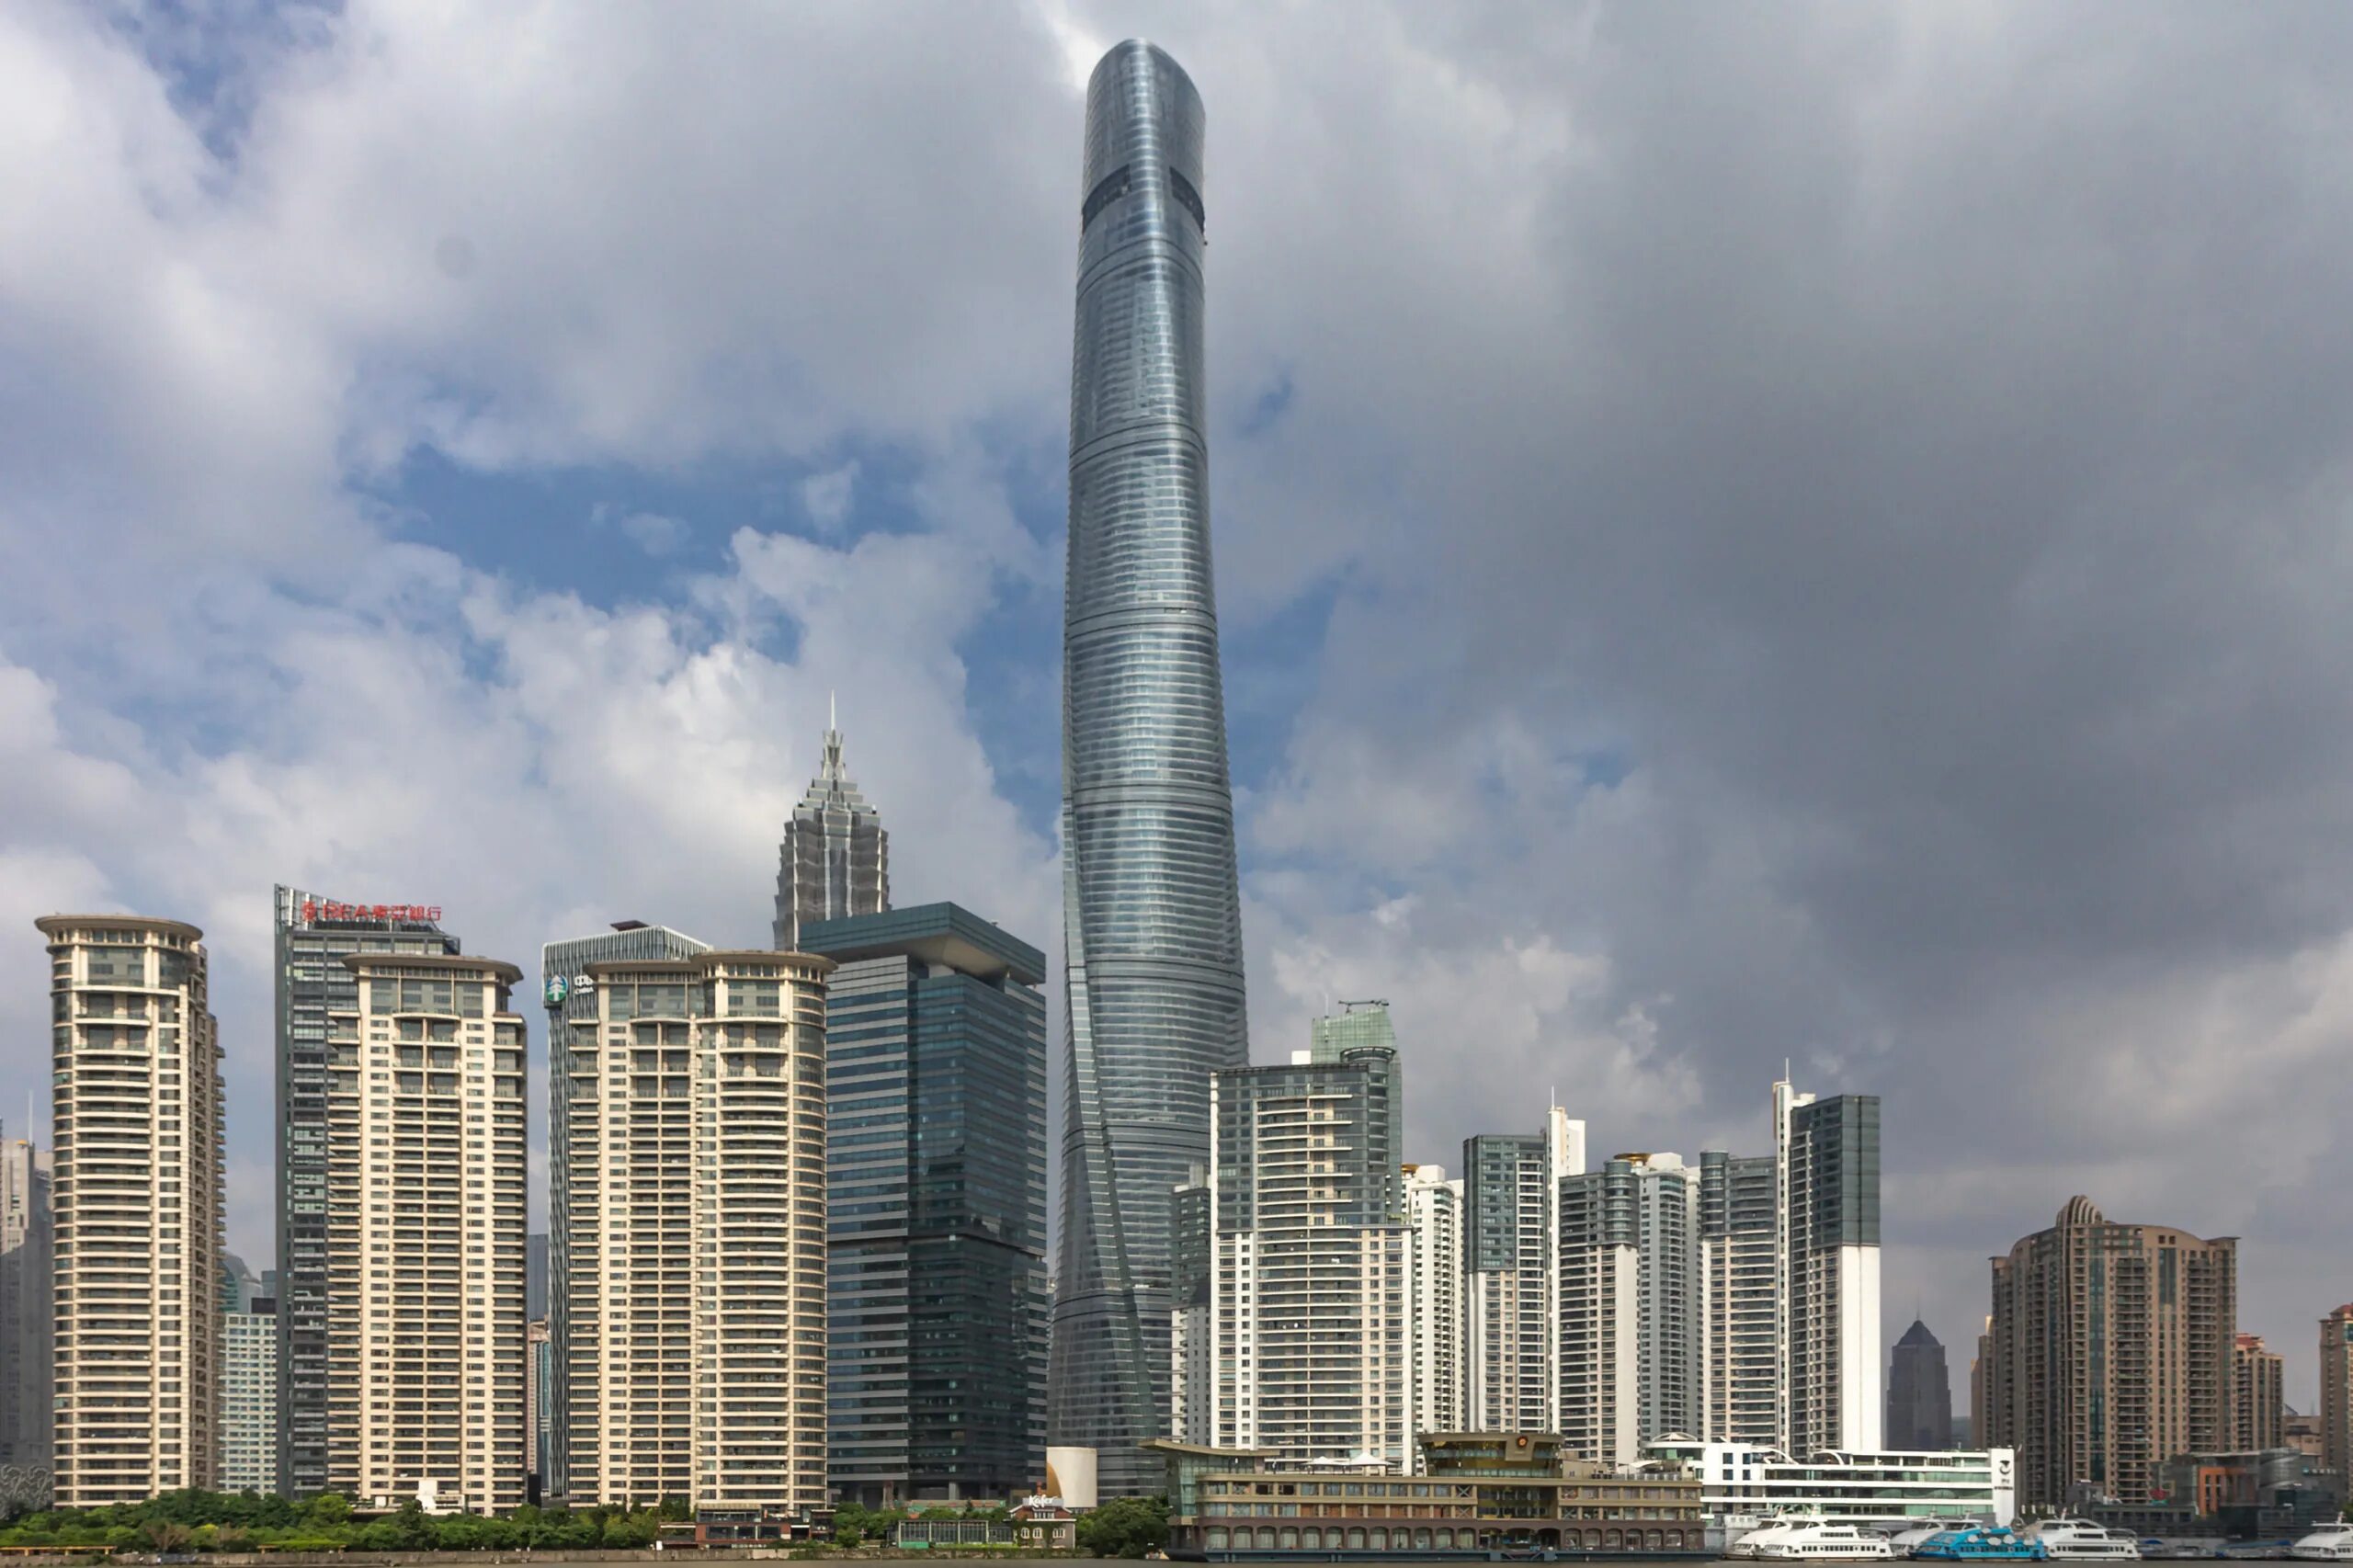 Башня Шанхай Тауэр. Шанхай башни высотки. Шанхай ТОВЕР небоскреб. Шанхайская башня (632 м). Шанхай, Китай. Высотных башен